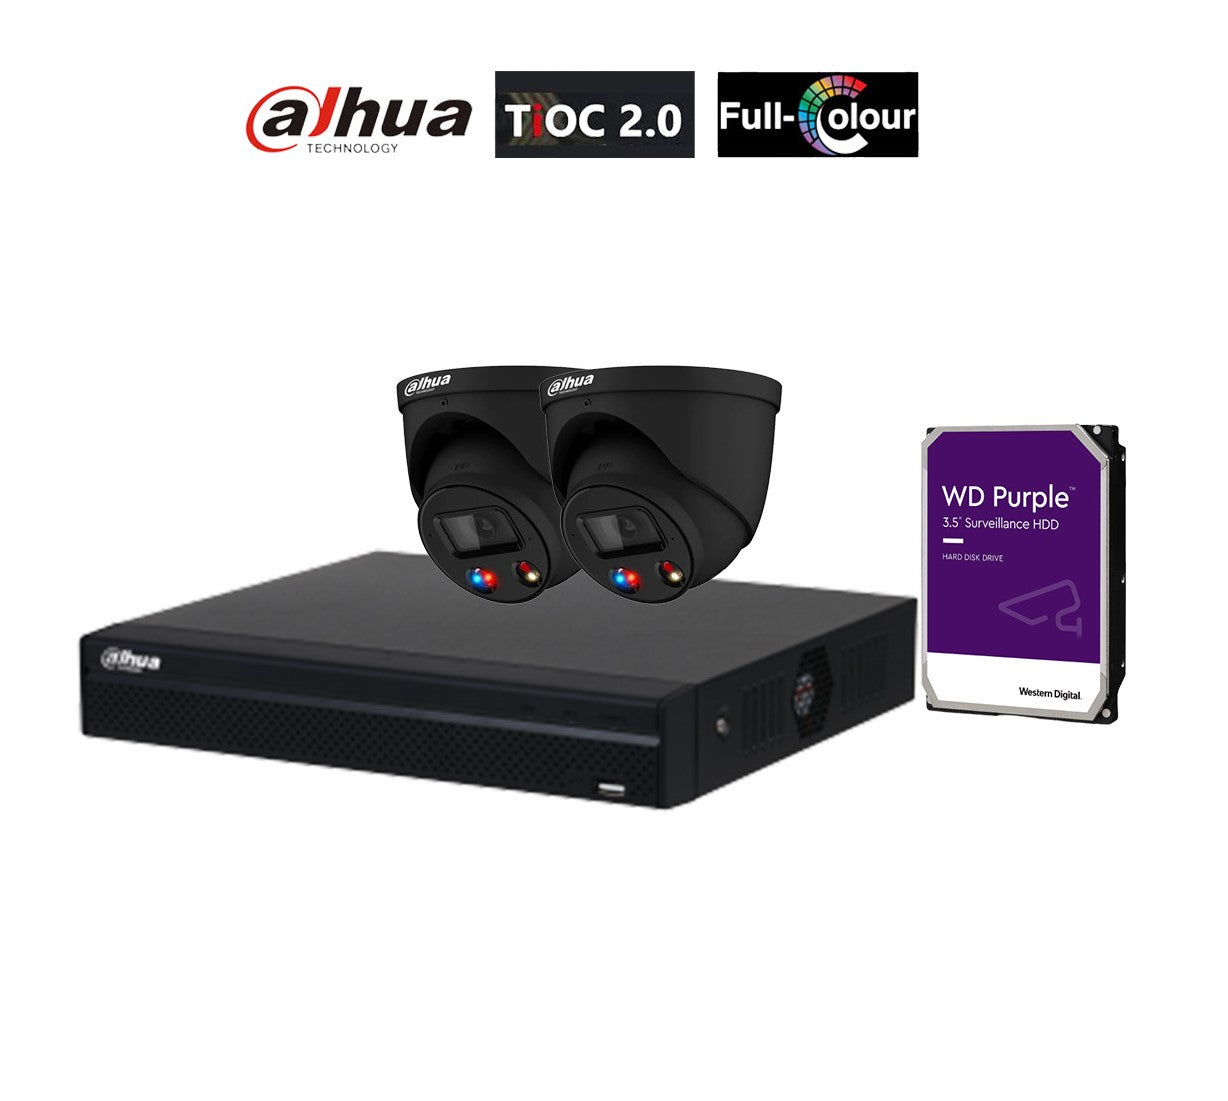 Dahua AI TiOC 2x 6MP CCTV Cameras (Black) DH-IPC-HDW3649H-AS-PV-ANZ, 4CH  WizSense NVR DHI-NVR4104HS-4P Kit